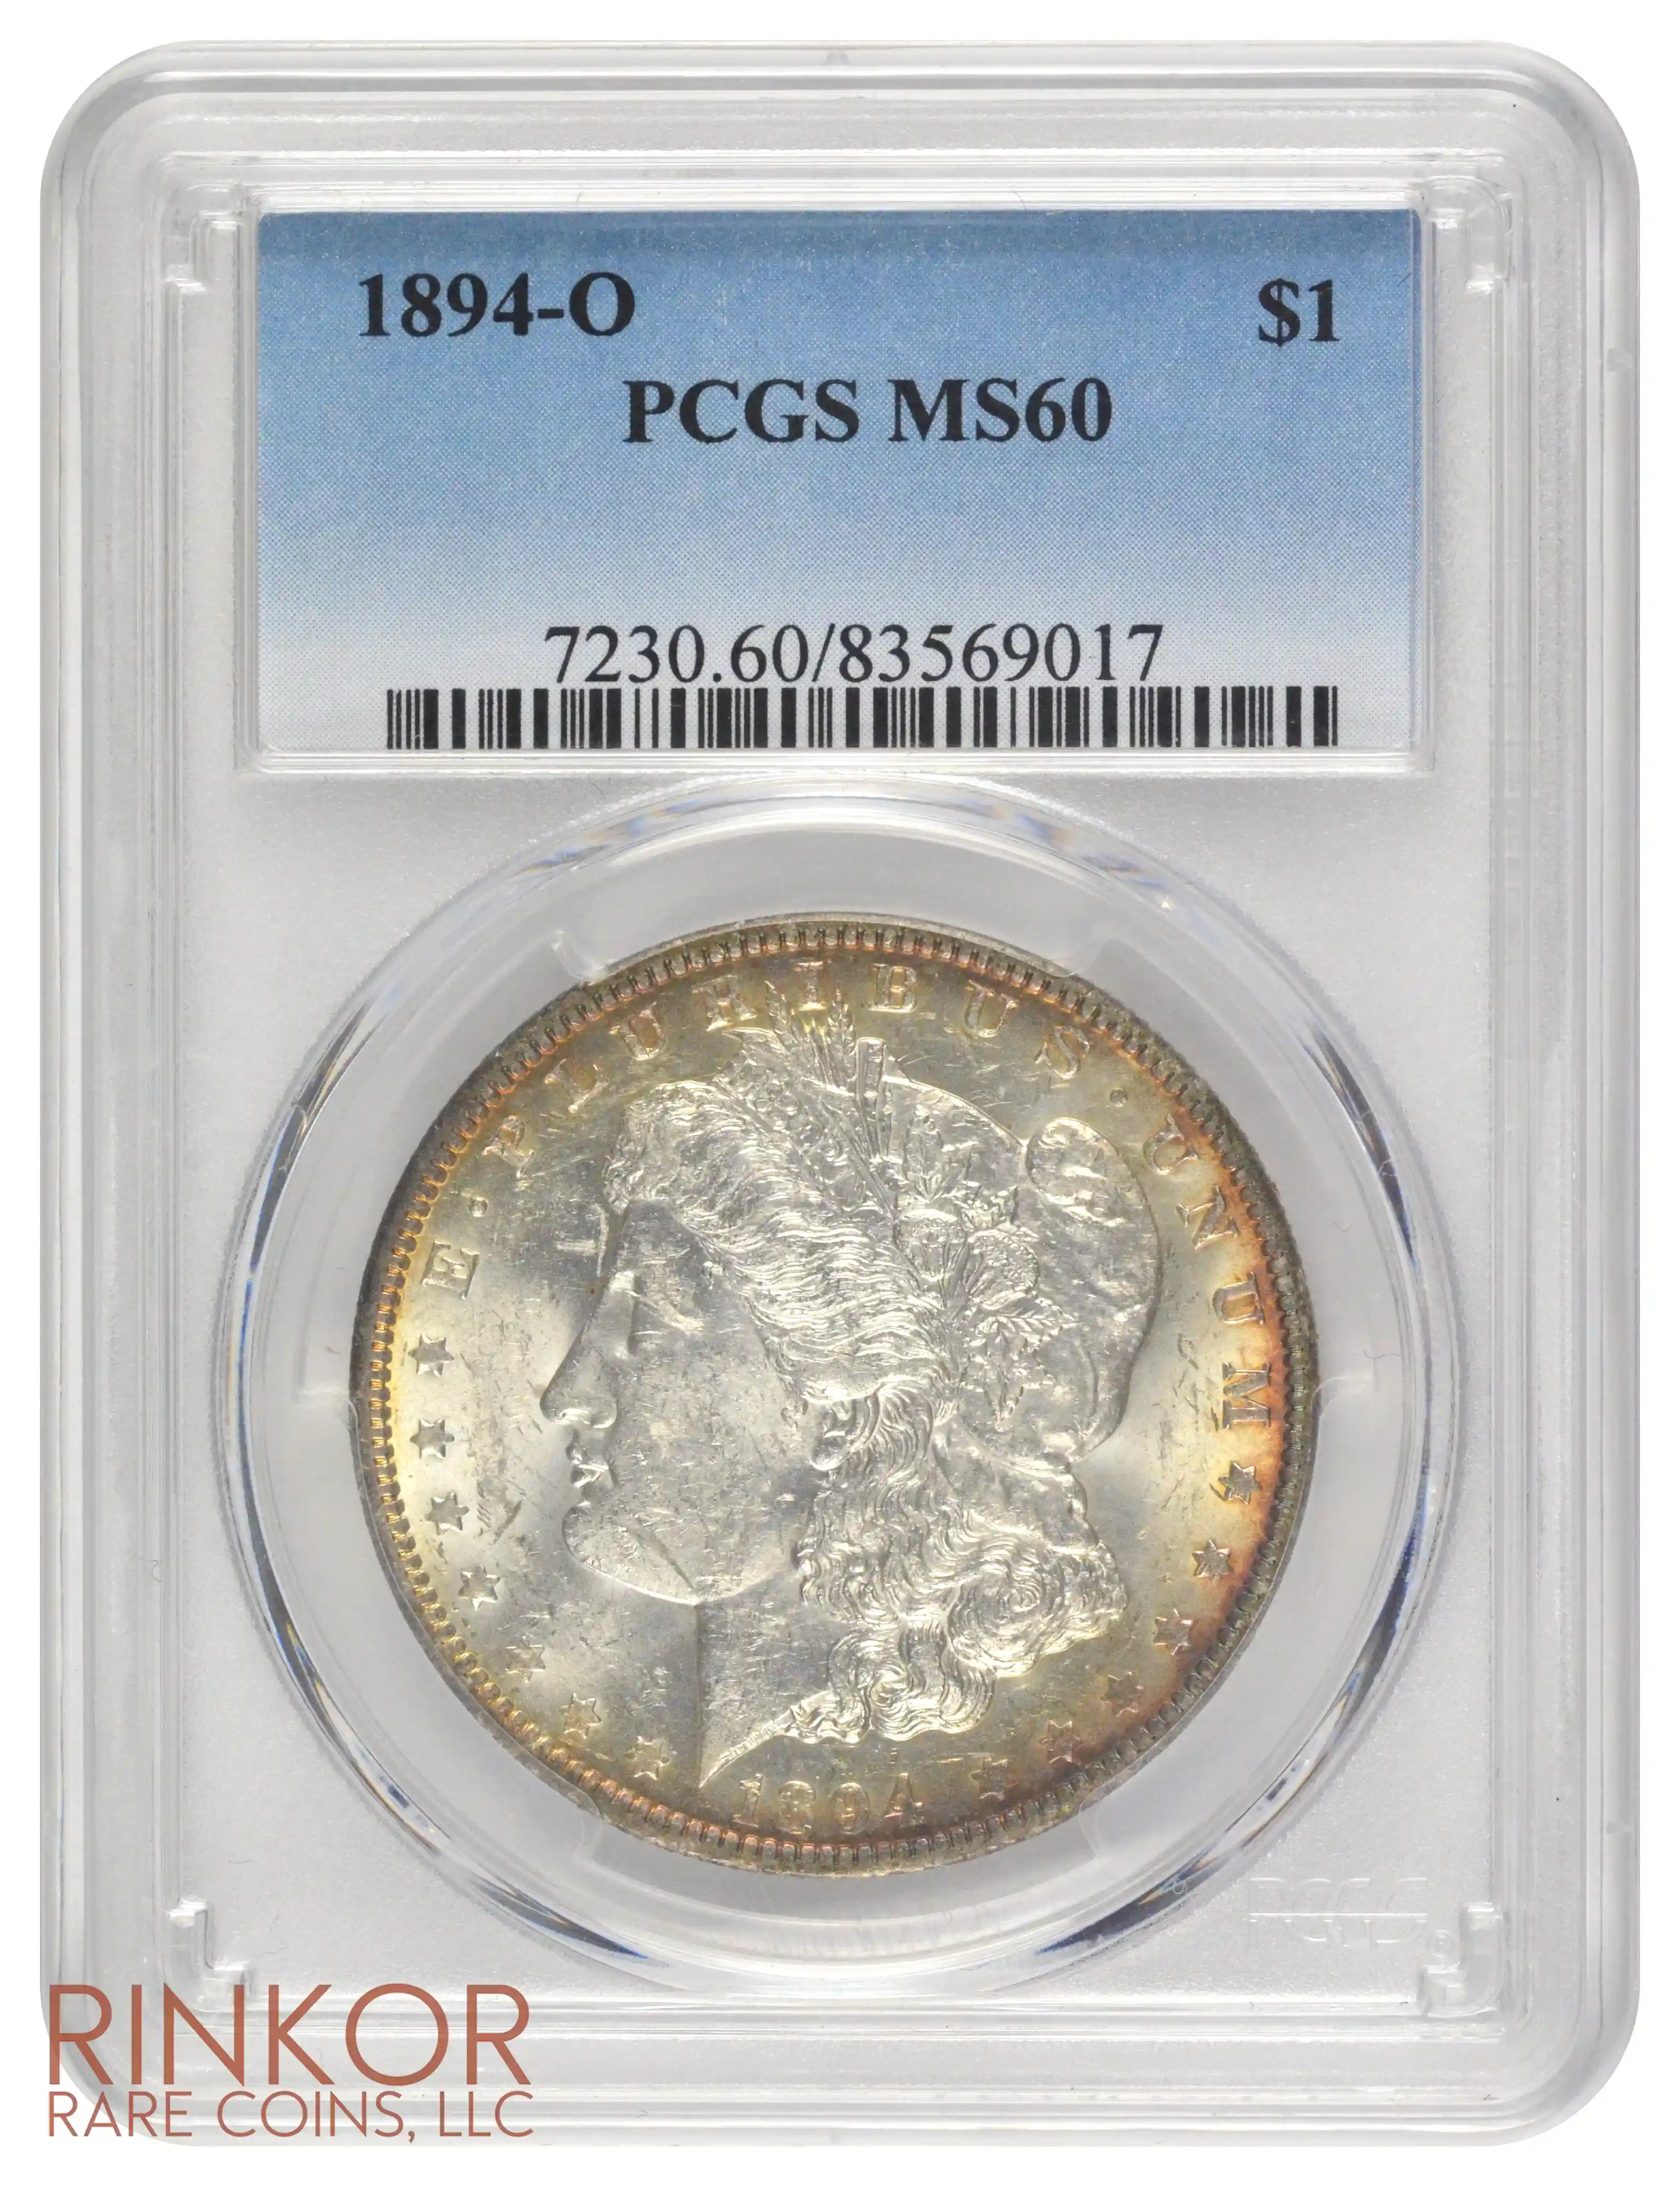 1894-O $1 PCGS MS 60